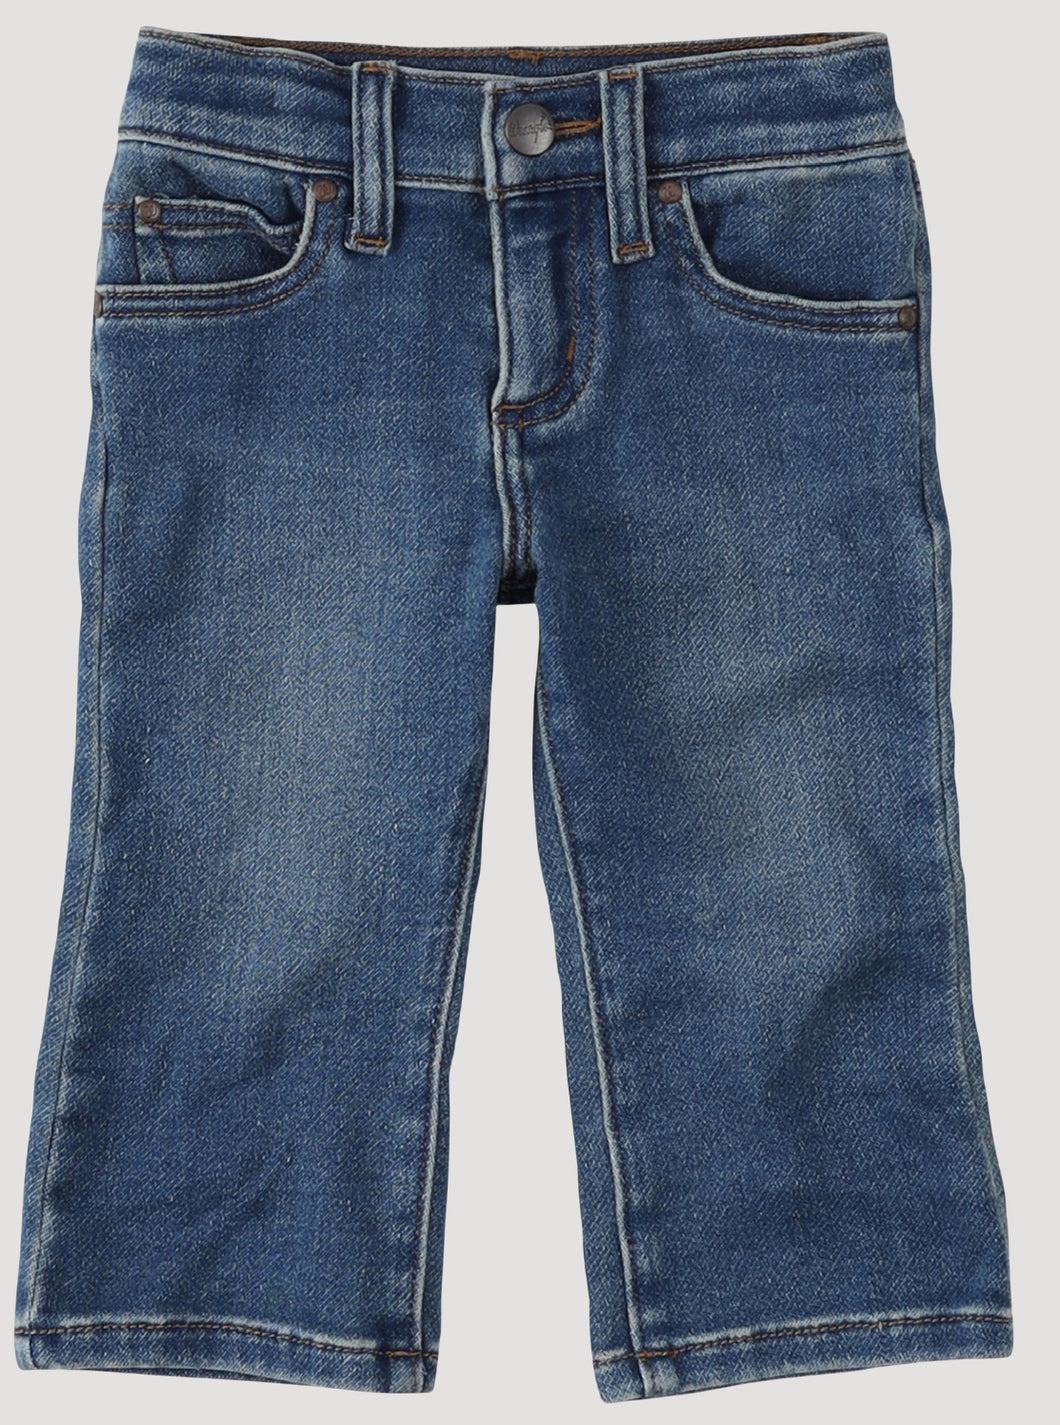 Wrangler West Infant/ Toddler Jeans